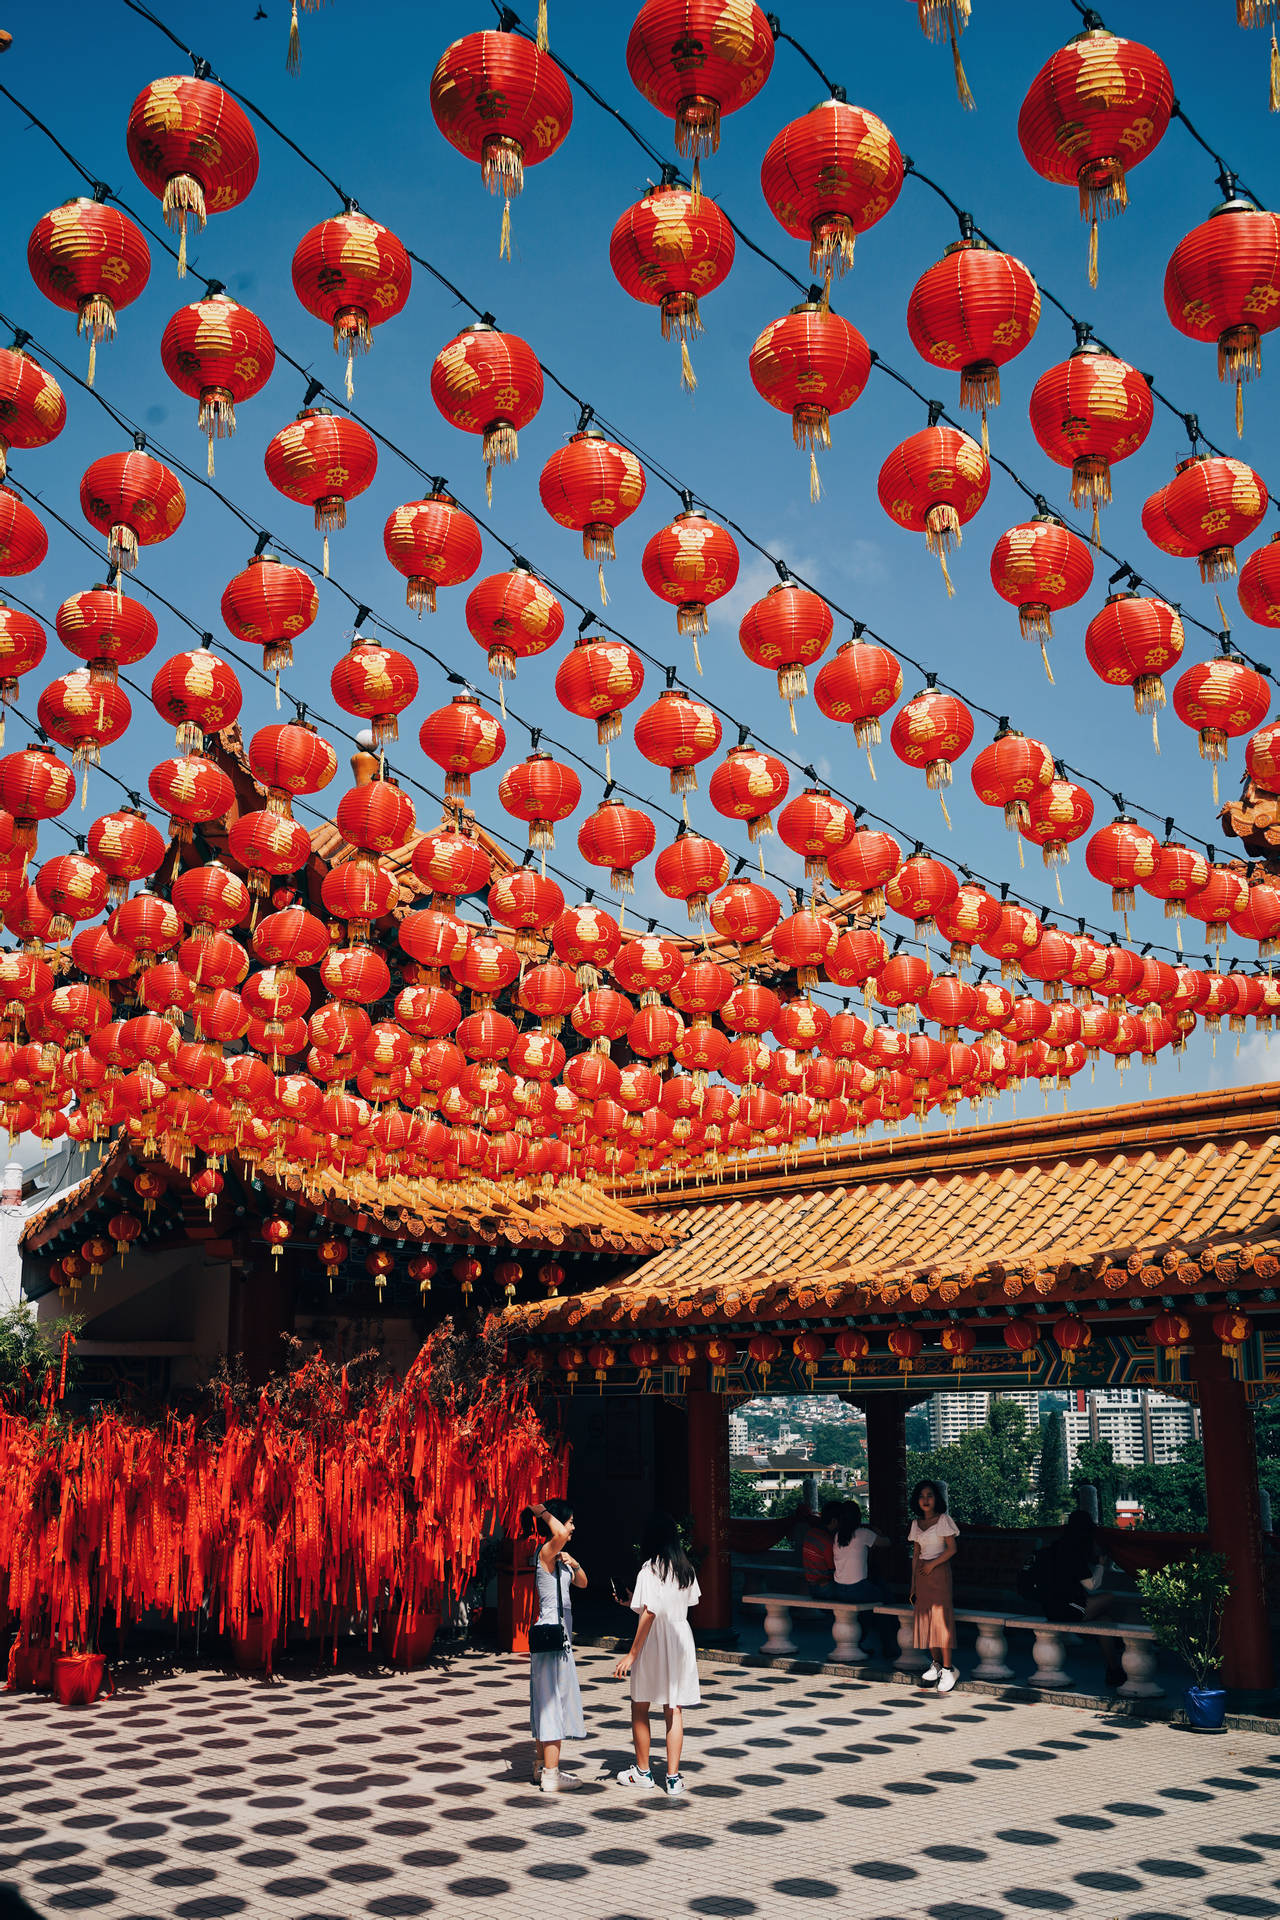 Caption: Spirited Celebration Of Chinese New Year Background